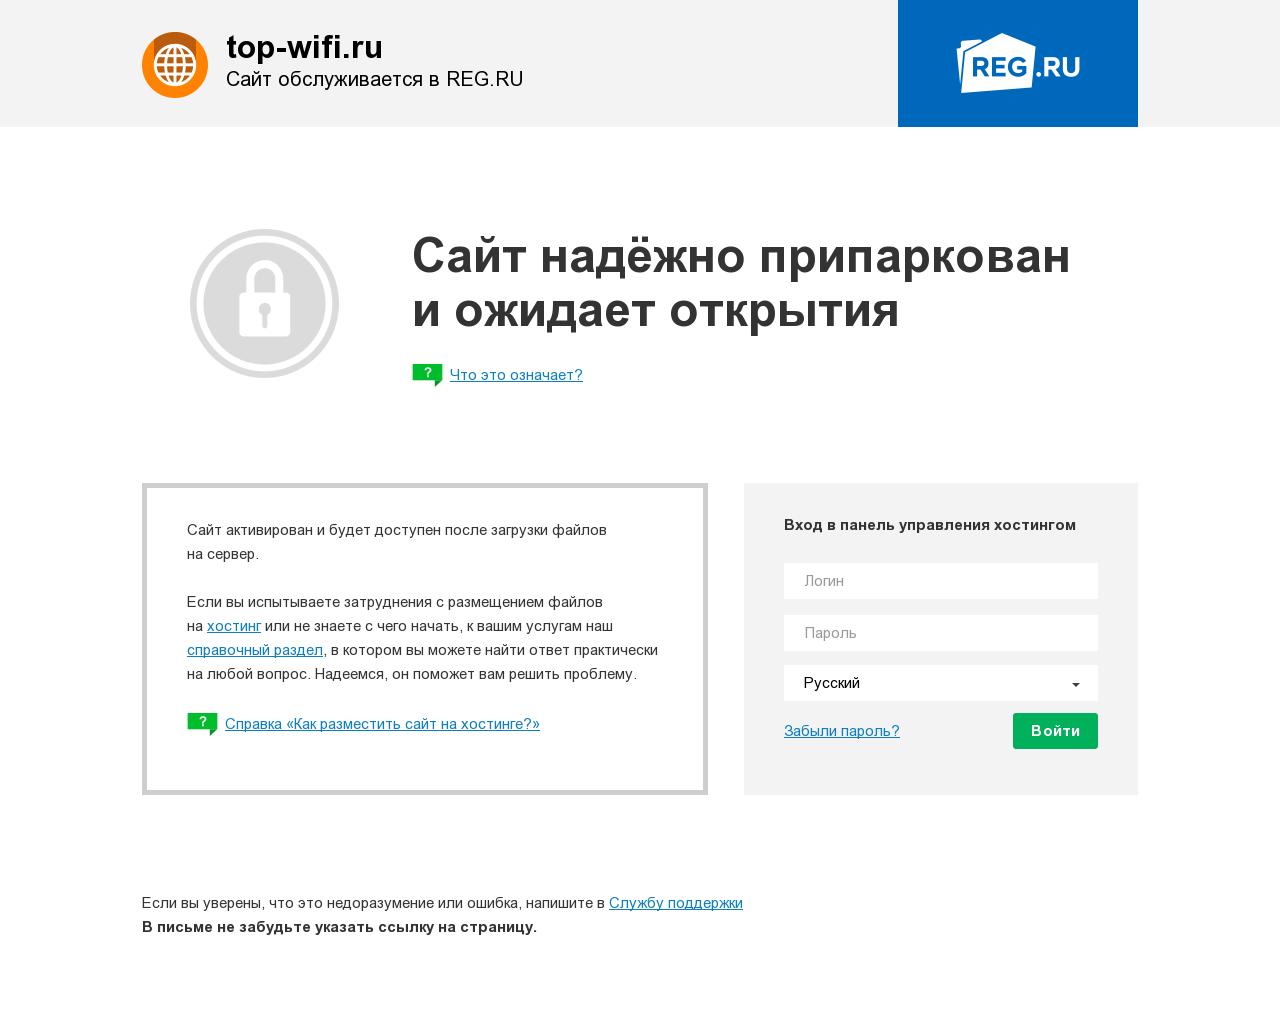 Изображение сайта top-wifi.ru в разрешении 1280x1024